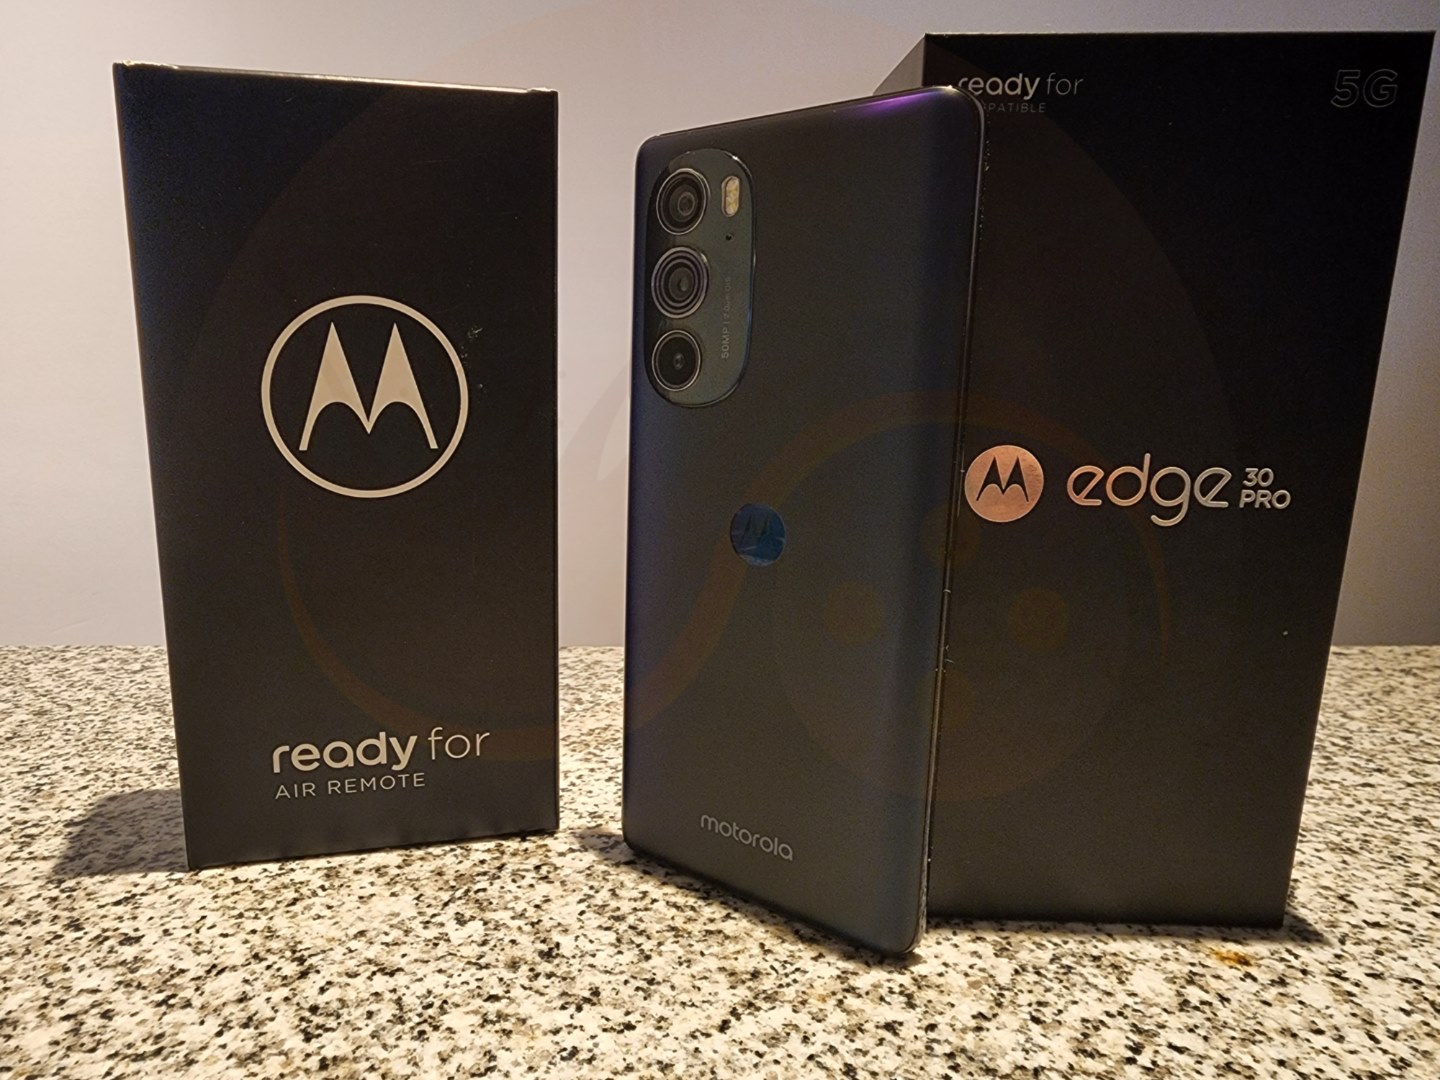 Motorola Edge 30 Pro: Análisis y opiniones